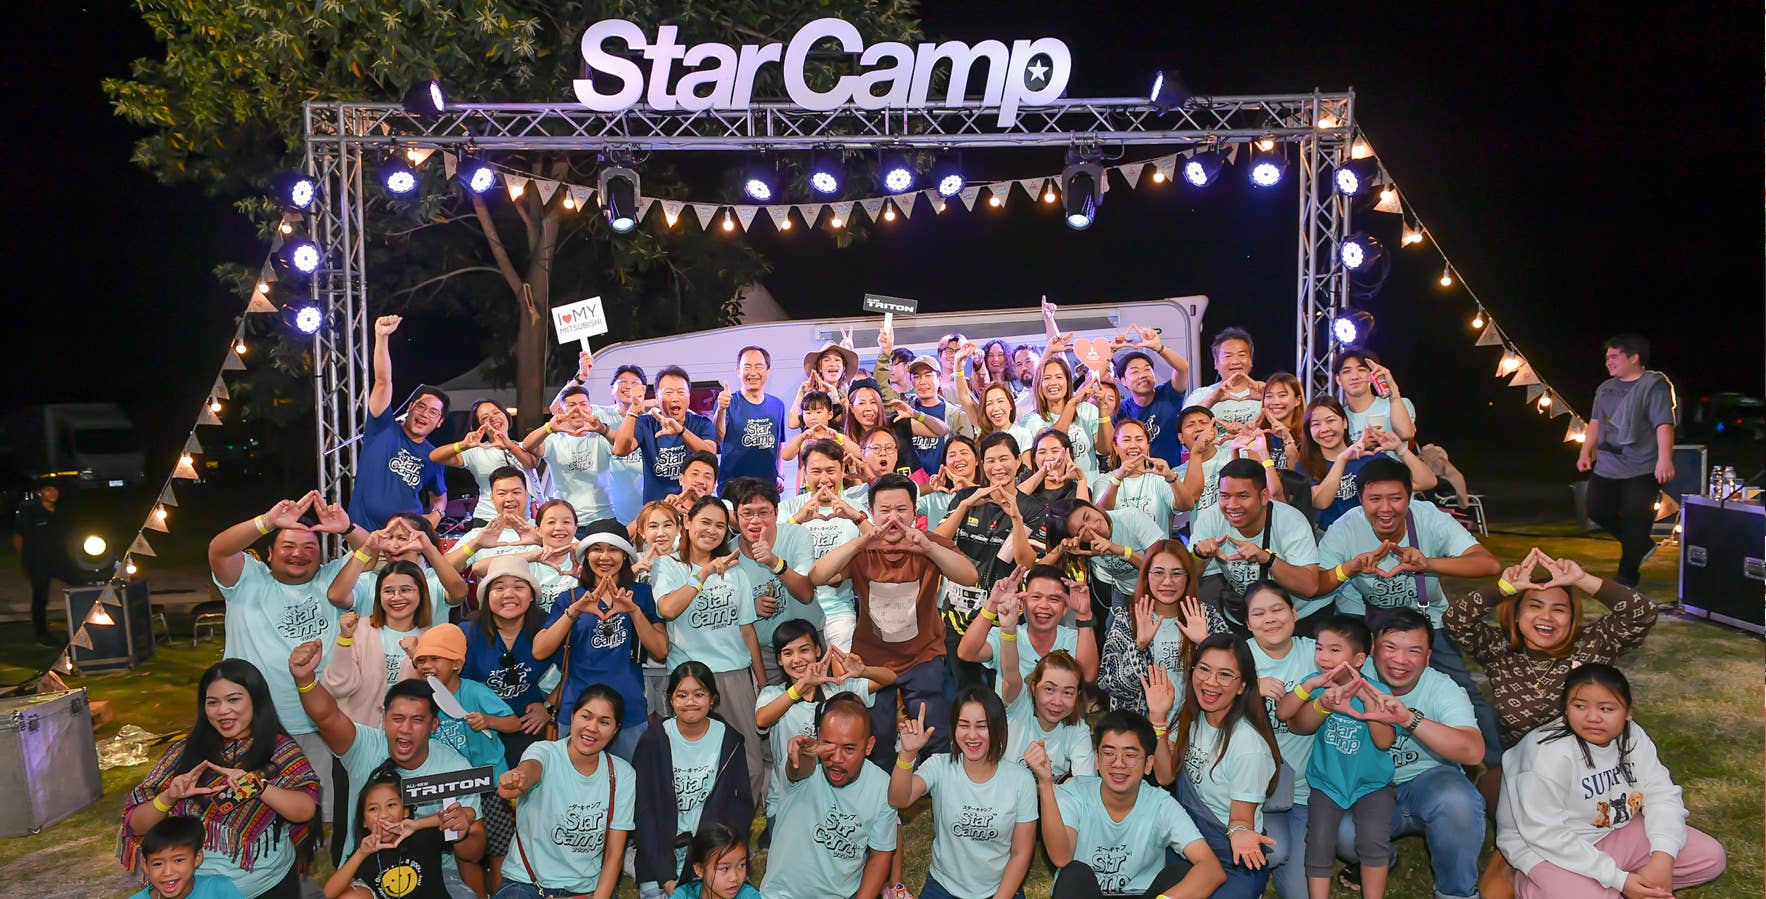 มิตซูบิชิ มอเตอร์ส ประเทศไทย จัดกิจกรรม ‘Star Camp’ ครั้งแรกในไทย มอบประสบการณ์สุดเอ็กซ์คลูซีฟ เอาใจสายแคมป์